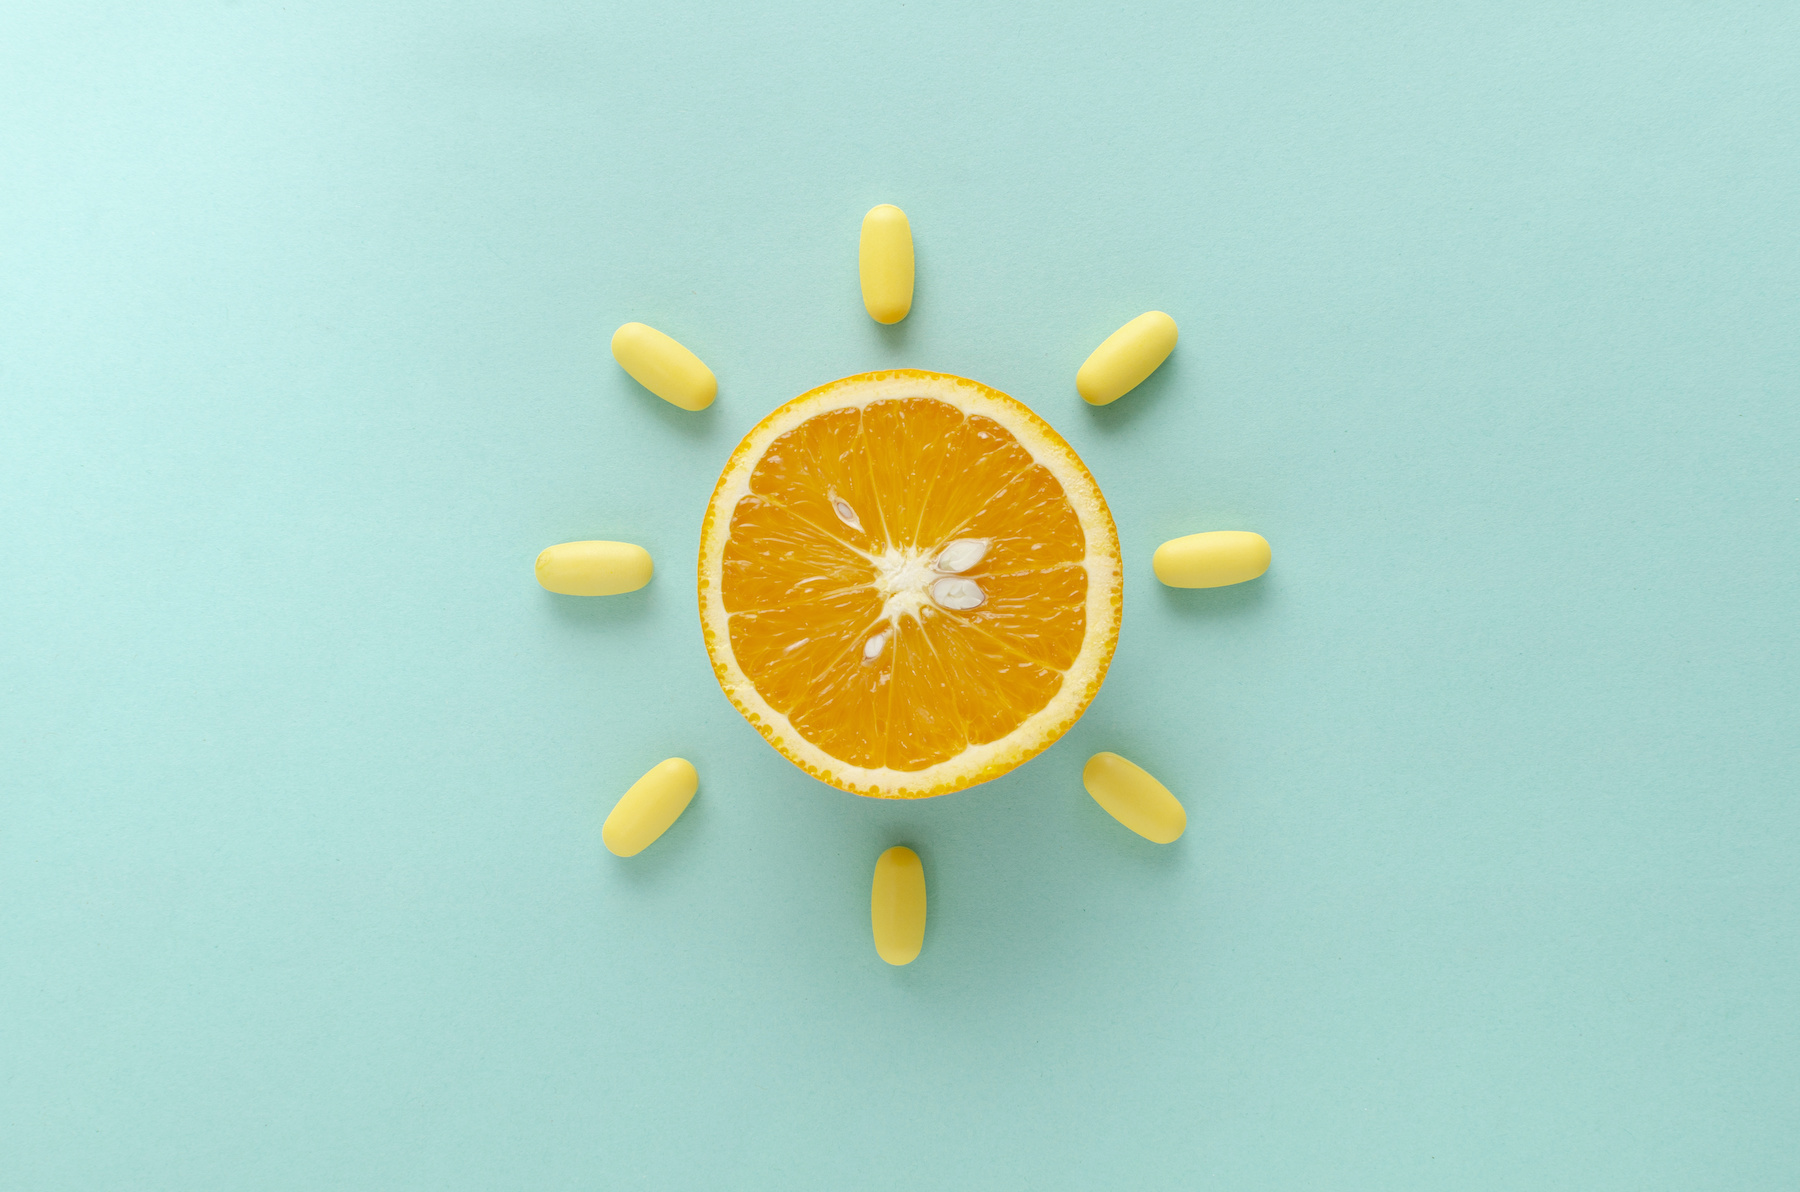 La vitamine C se trouve naturellement dans les agrumes. ©&nbsp;uaPieceofCake, Adobe Stock